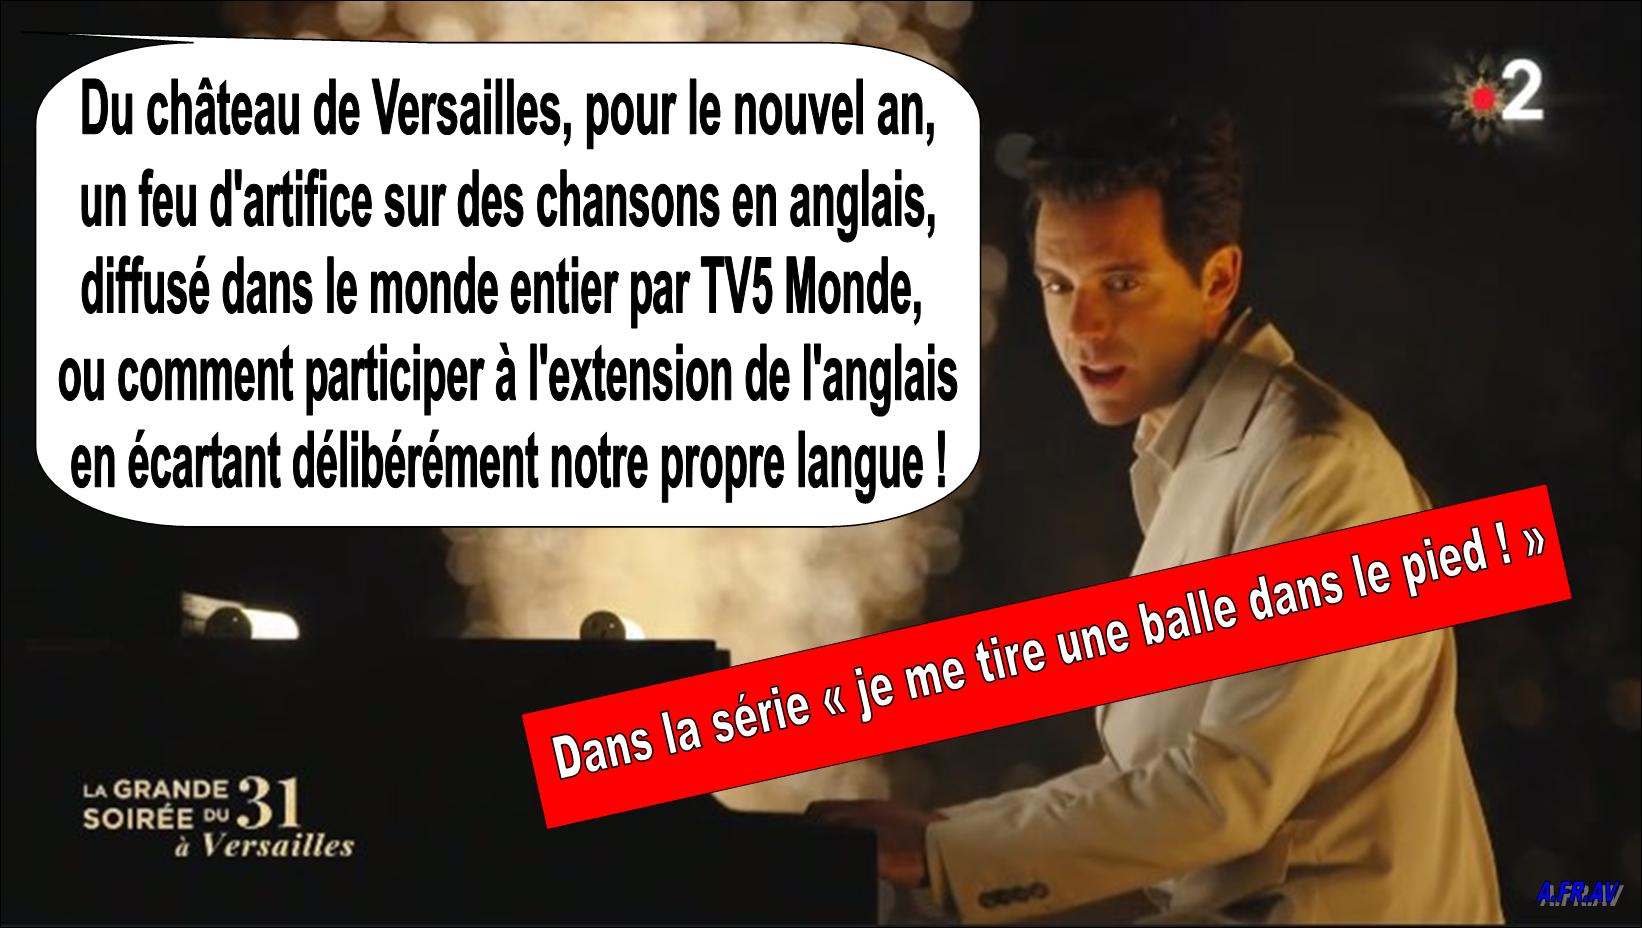 Versailles feu d'artifice, TV5Monde, Stéphane Bern, langue française